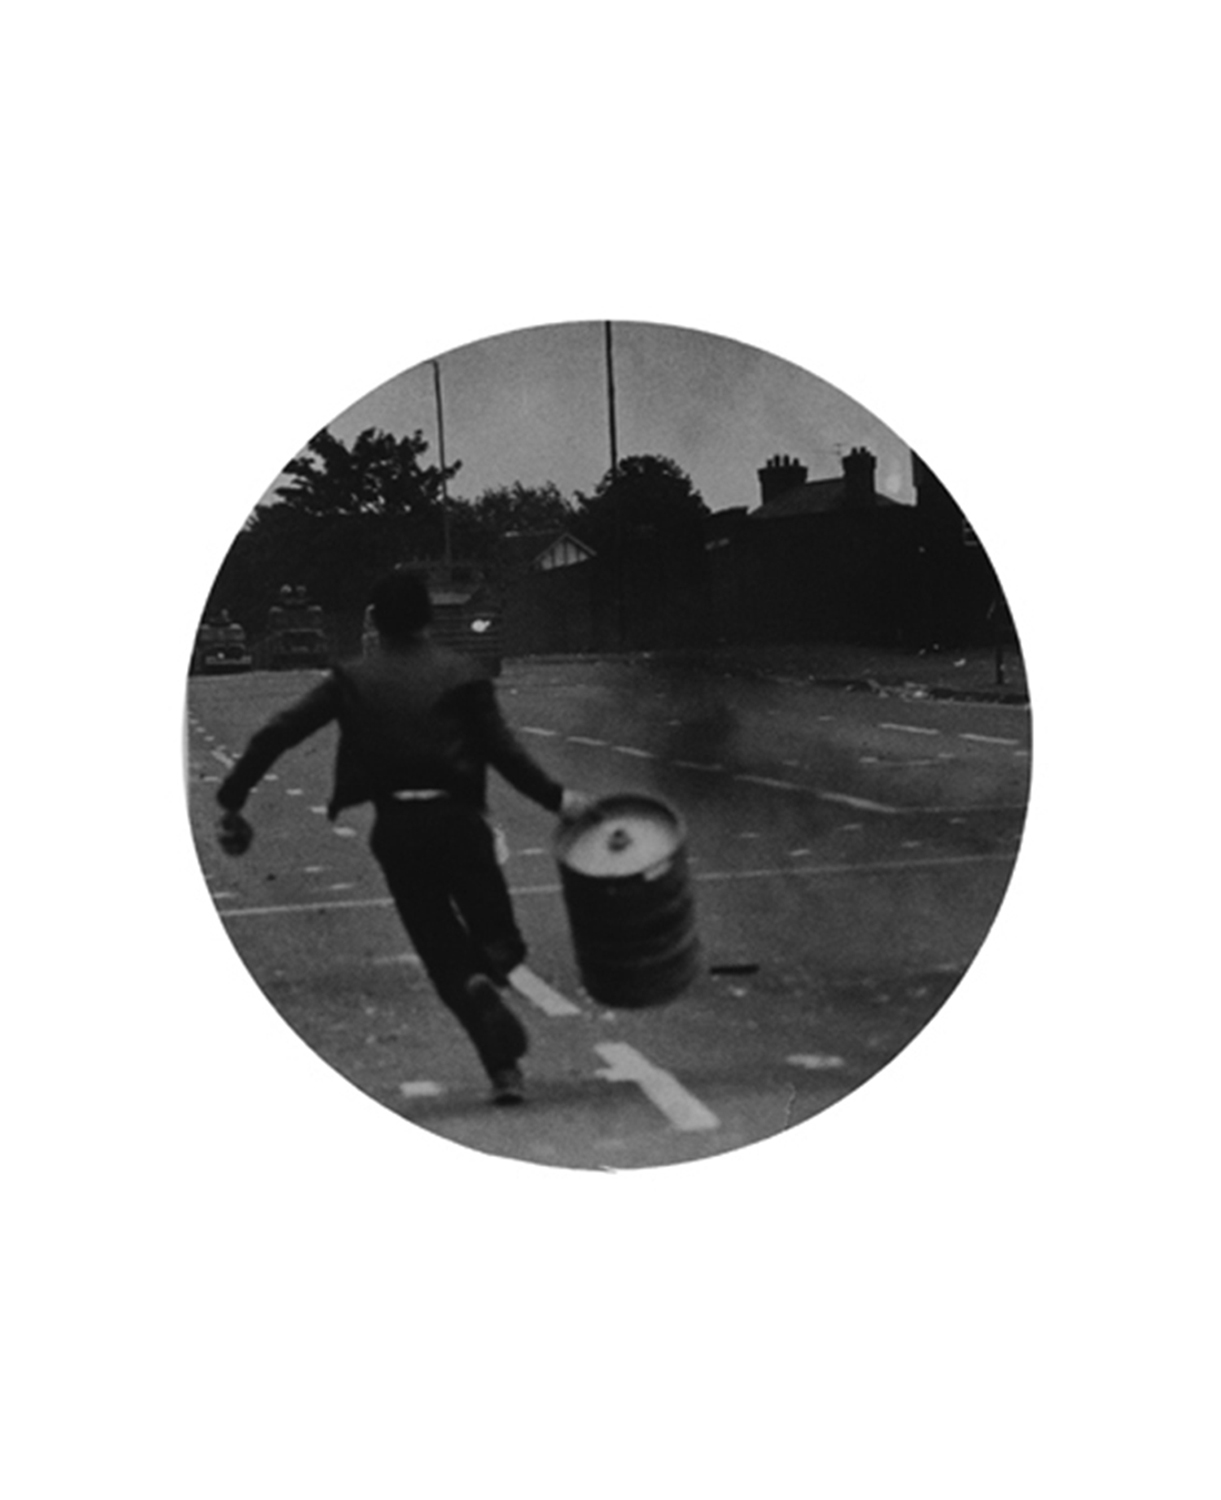  Untitled (Boy running with barrel) 